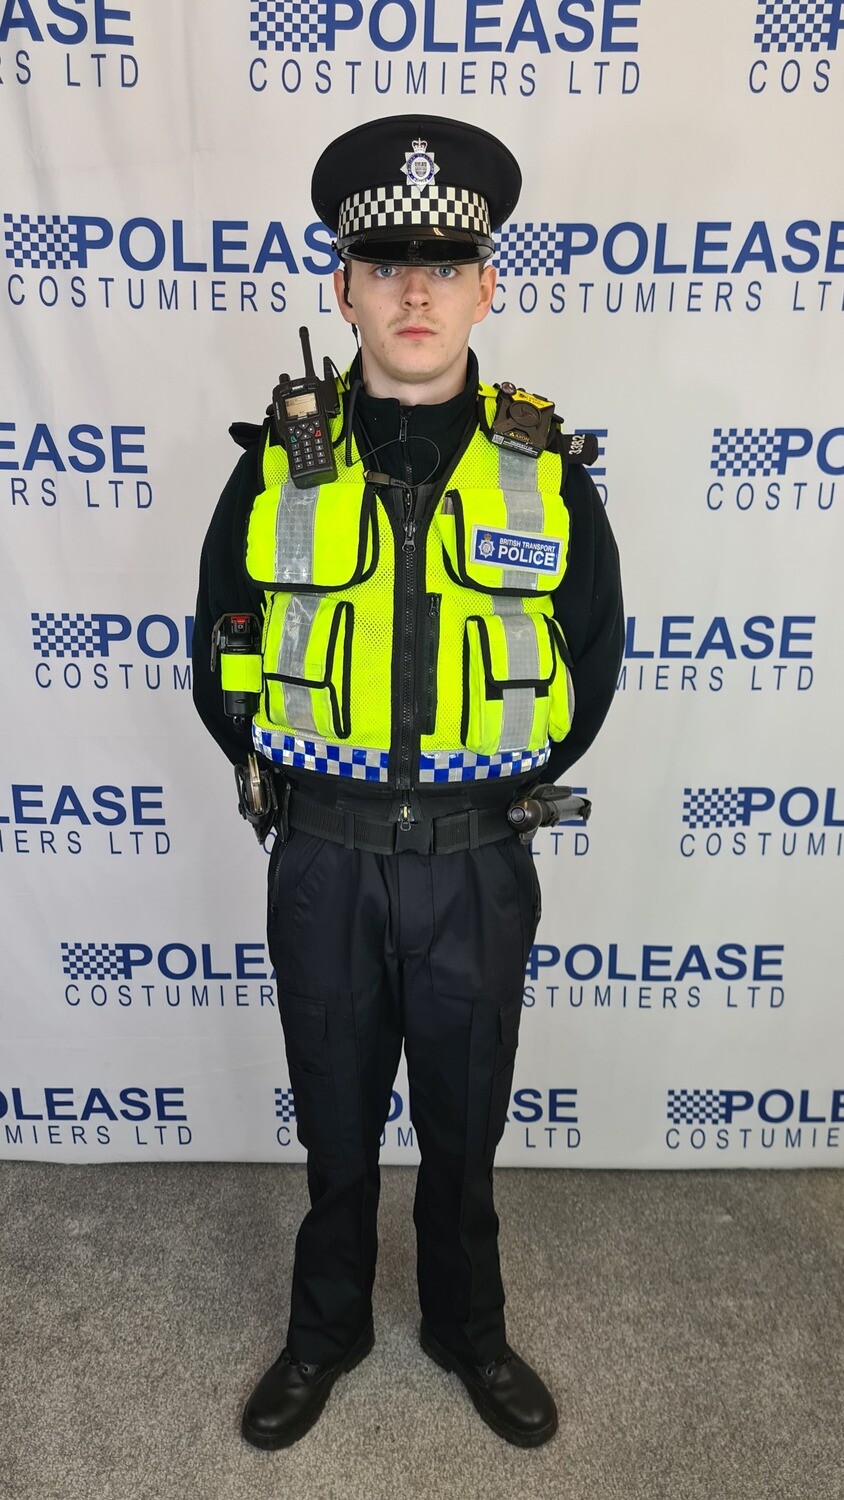 British Transport Police Standard Uniform Hi Viz vest